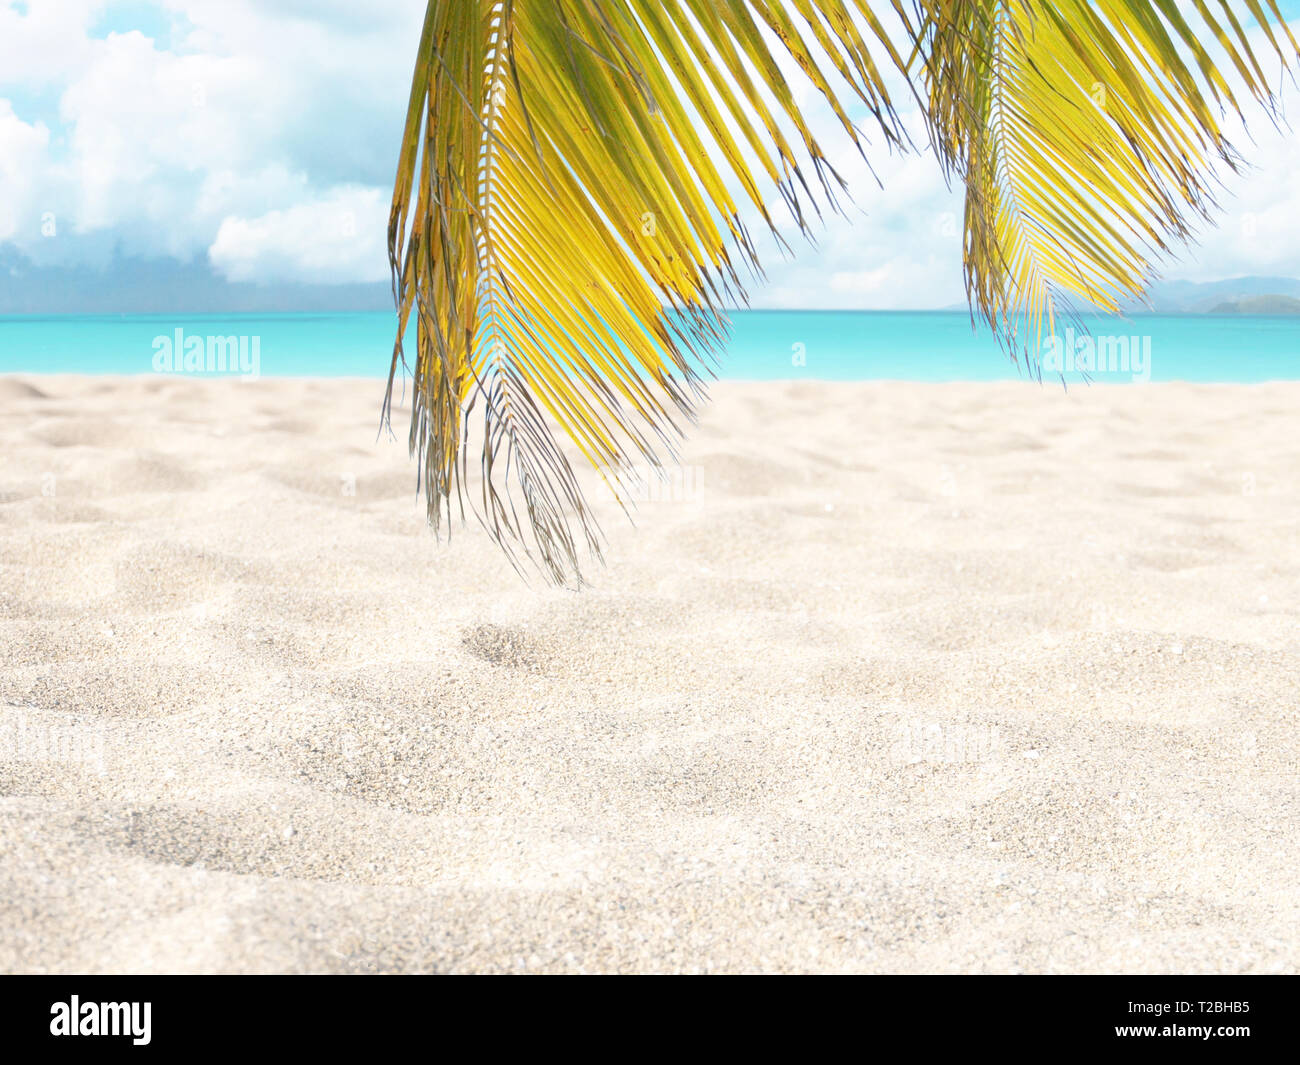 Les feuilles de cocotiers qui plane au-dessus de la plage de sable. Île tropicale paradisiaque. L'eau de l'océan turquoise brillant. Rêves de vacances estivales de destination. Blurre Banque D'Images